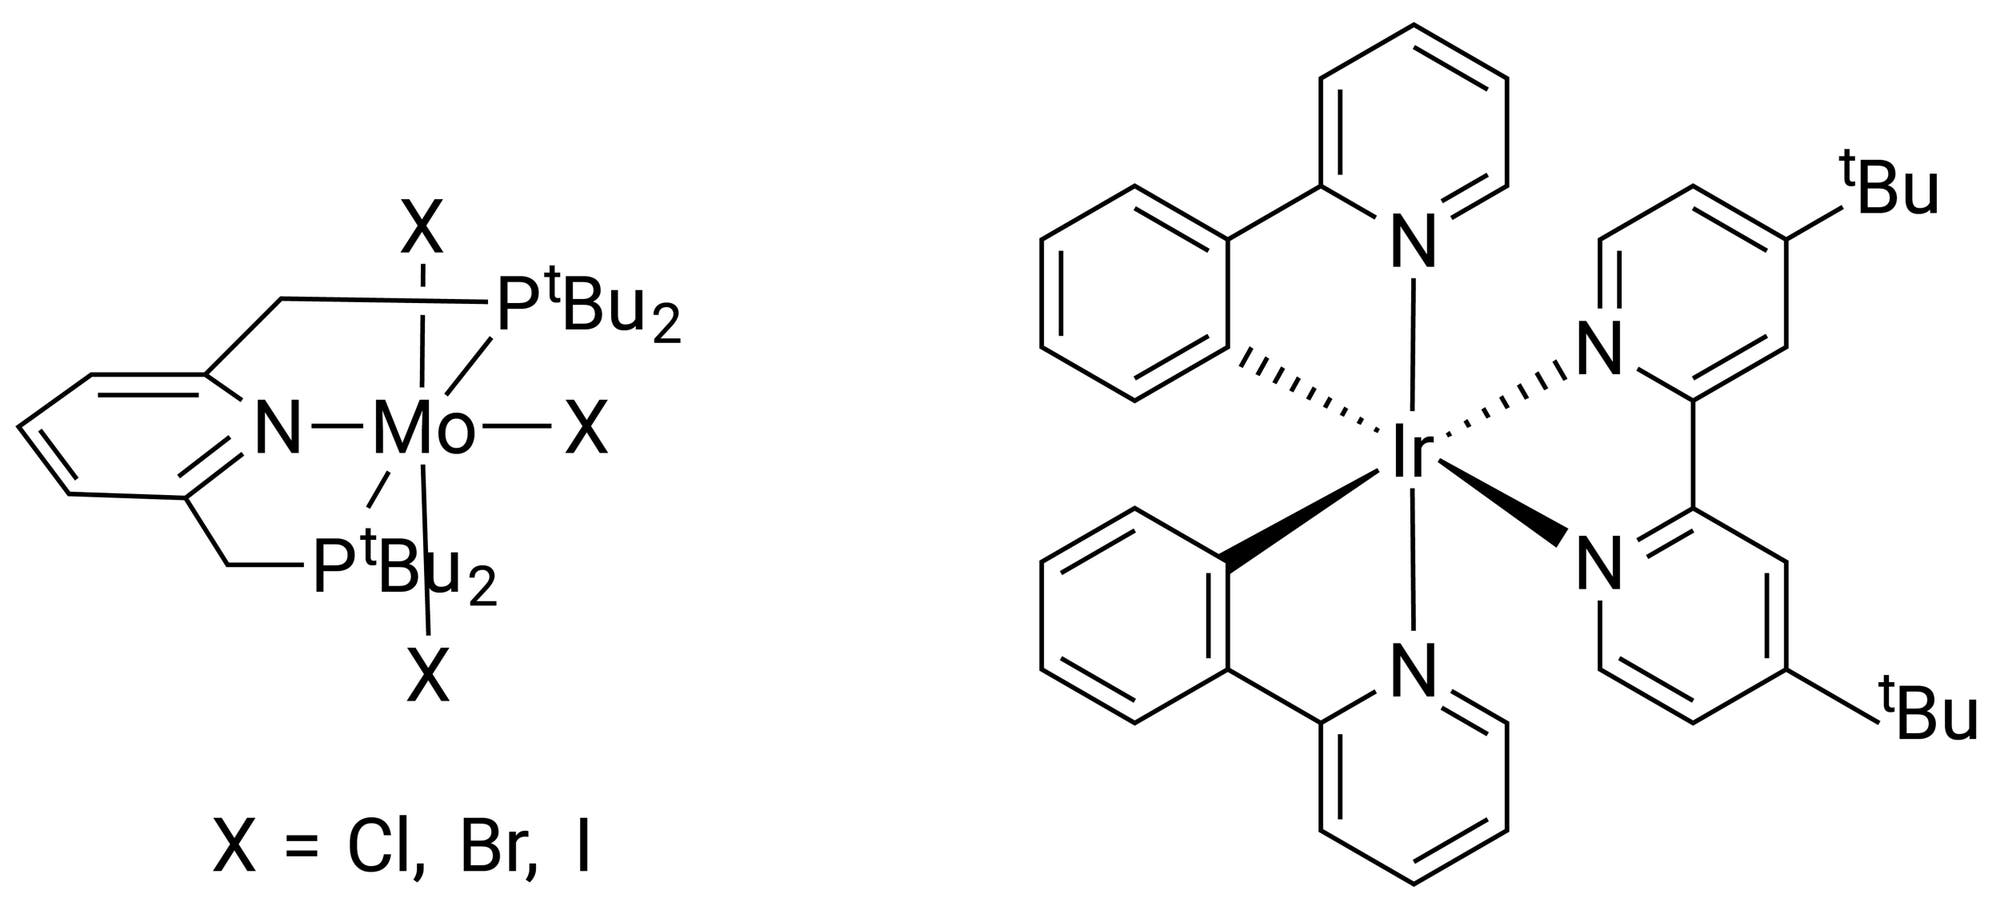 Strukturformeln von zwei Katalysatoren: links ein Molybdänkomplex mit Phosphin- und Halogenliganden, rechts ein Iridiumkomplex